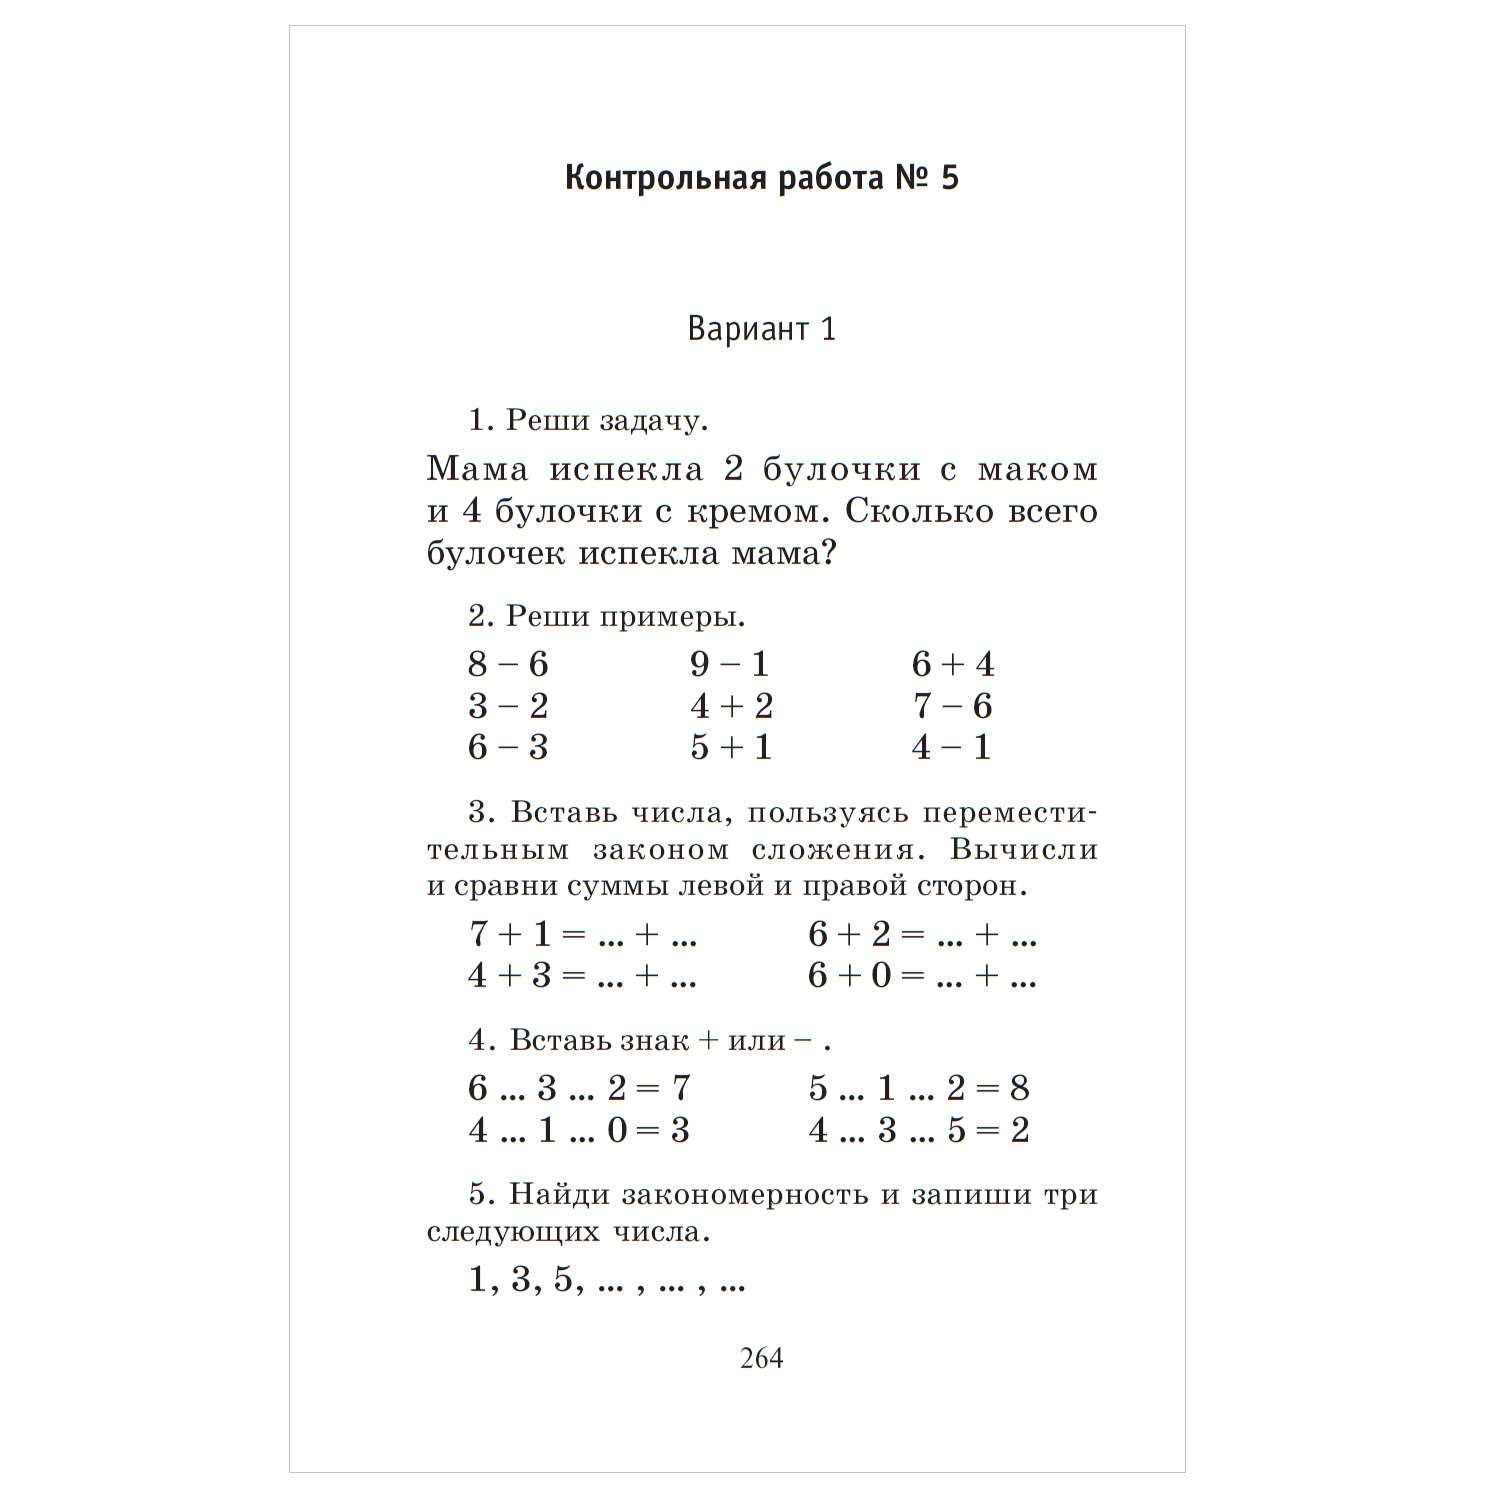 Книга АСТ Полный курс математики 1класс все типы заданий все виды задач примеров неравенств все контрольные - фото 10